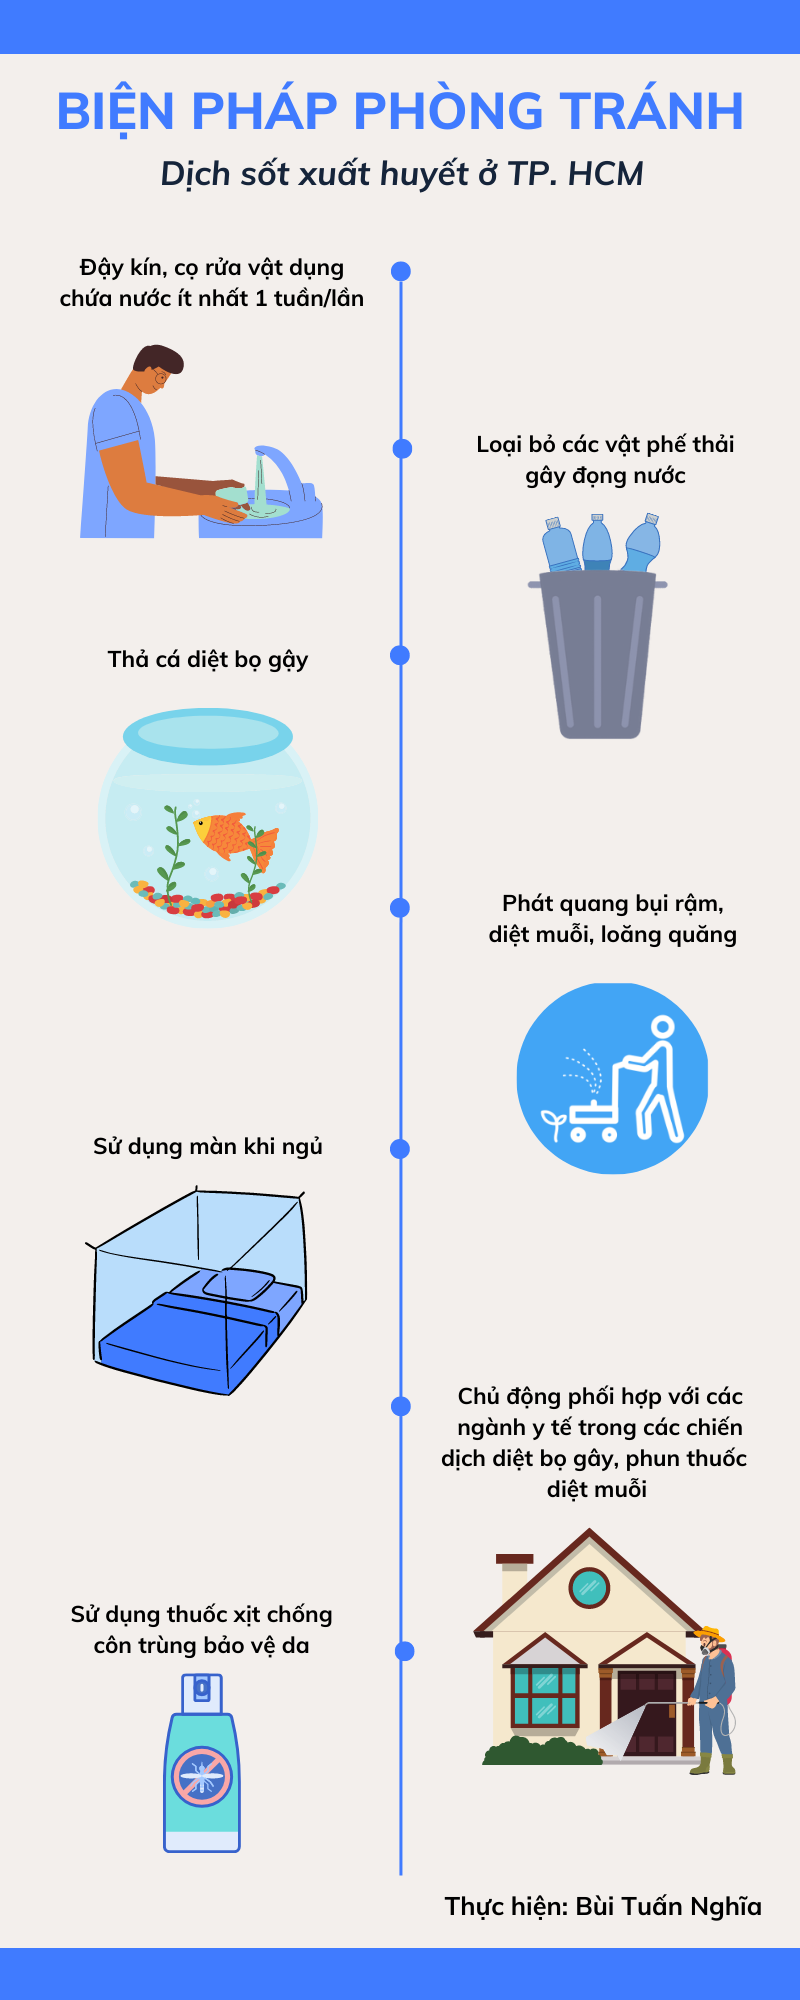 [Infographic] Thành phố Hồ Chí Minh mùa mưa: Phòng ngừa nguy cơ dịch sốt xuất huyết -0